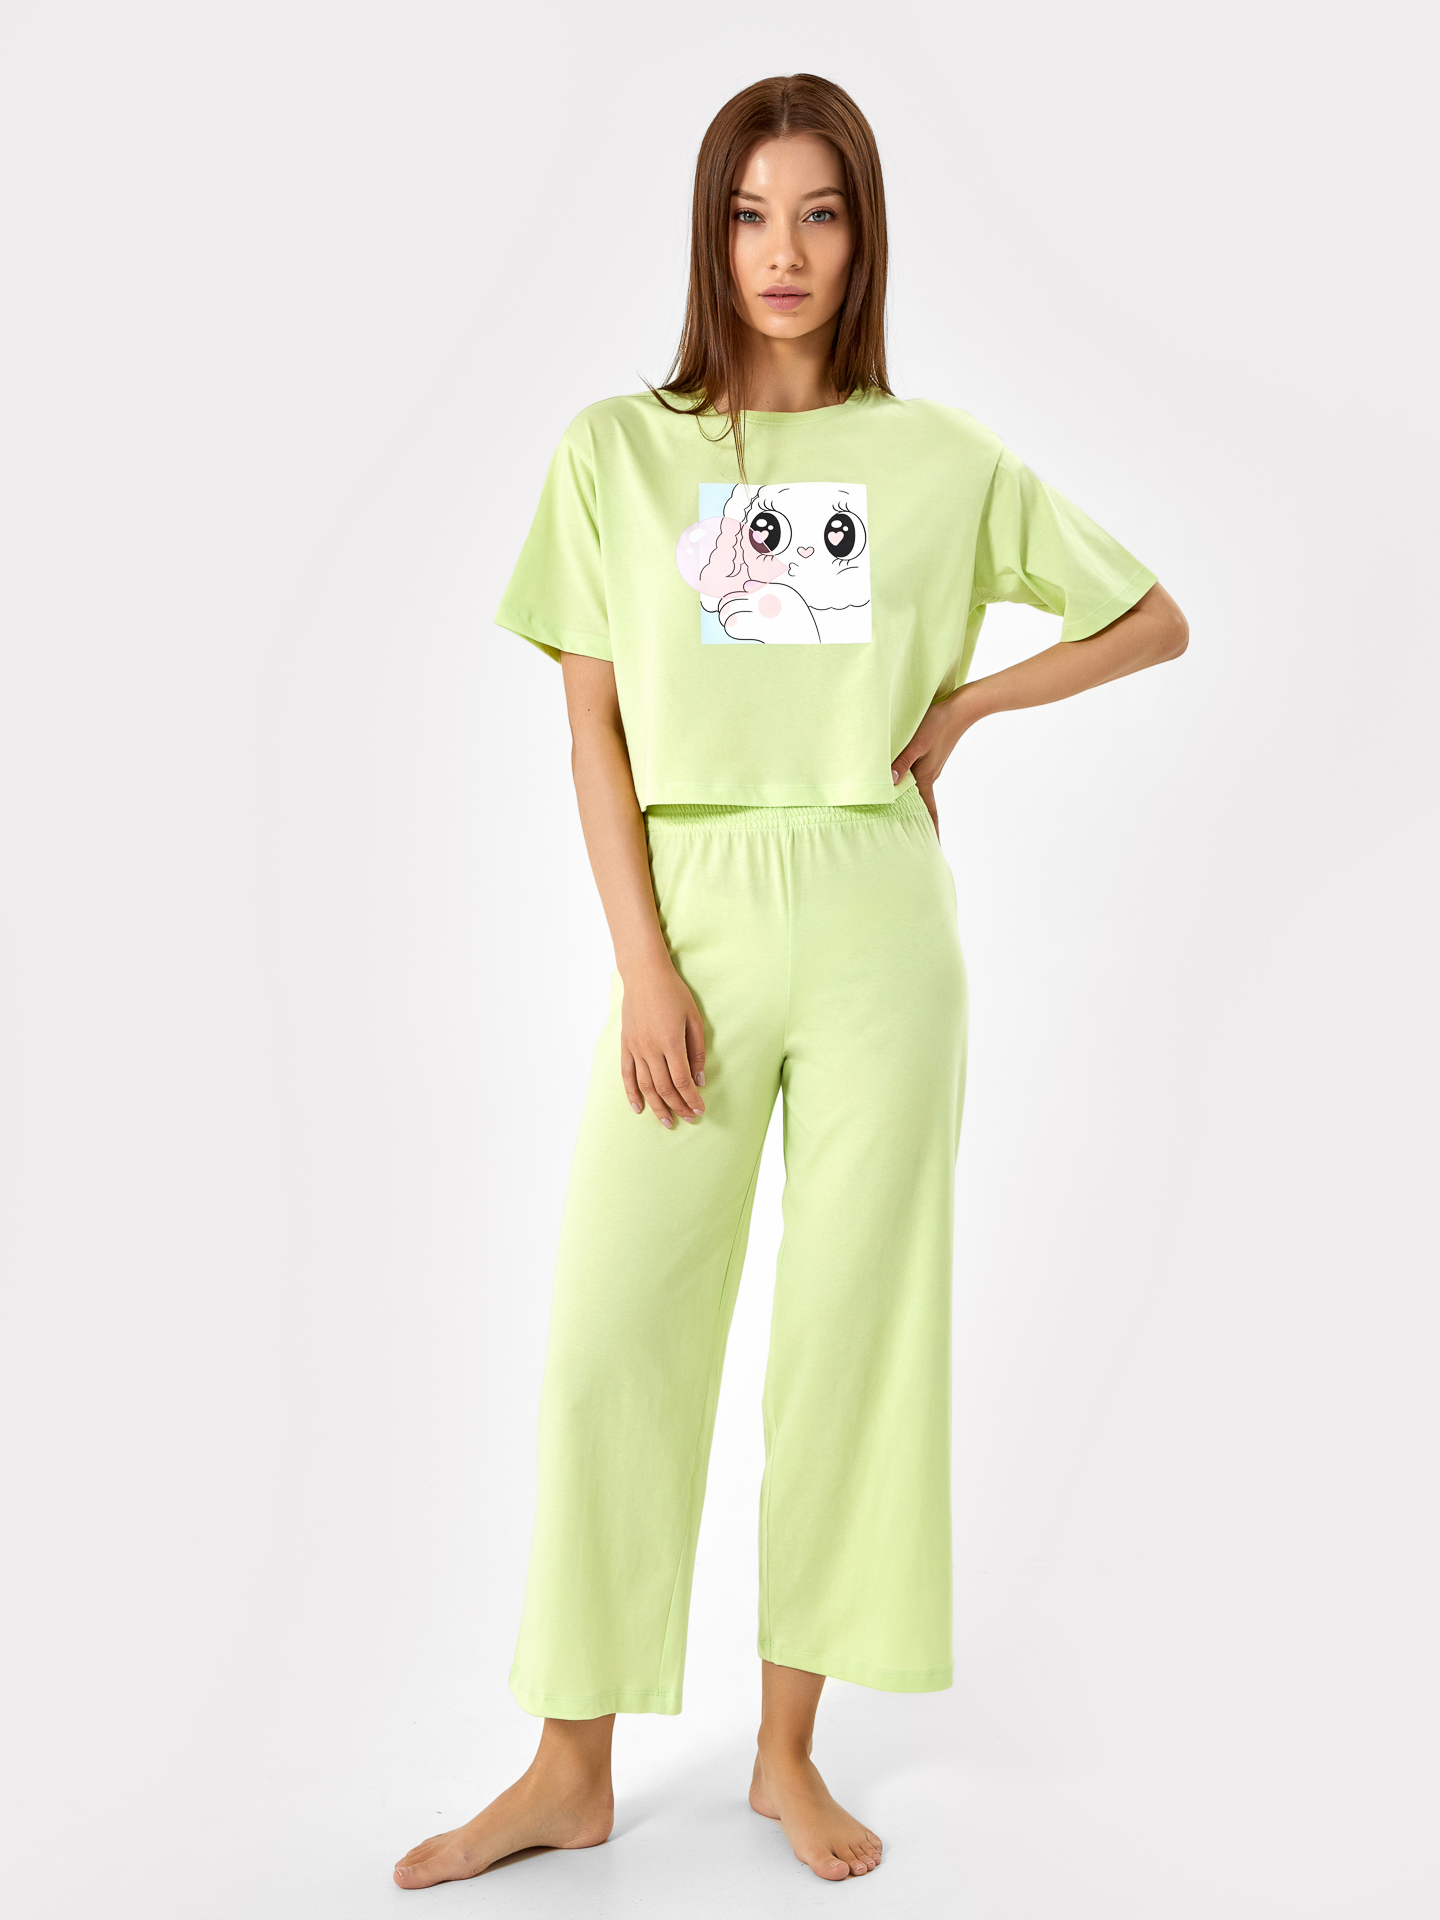 Комплект женский (футболка, бриджи) светло-салатового оттенка с милым принтом